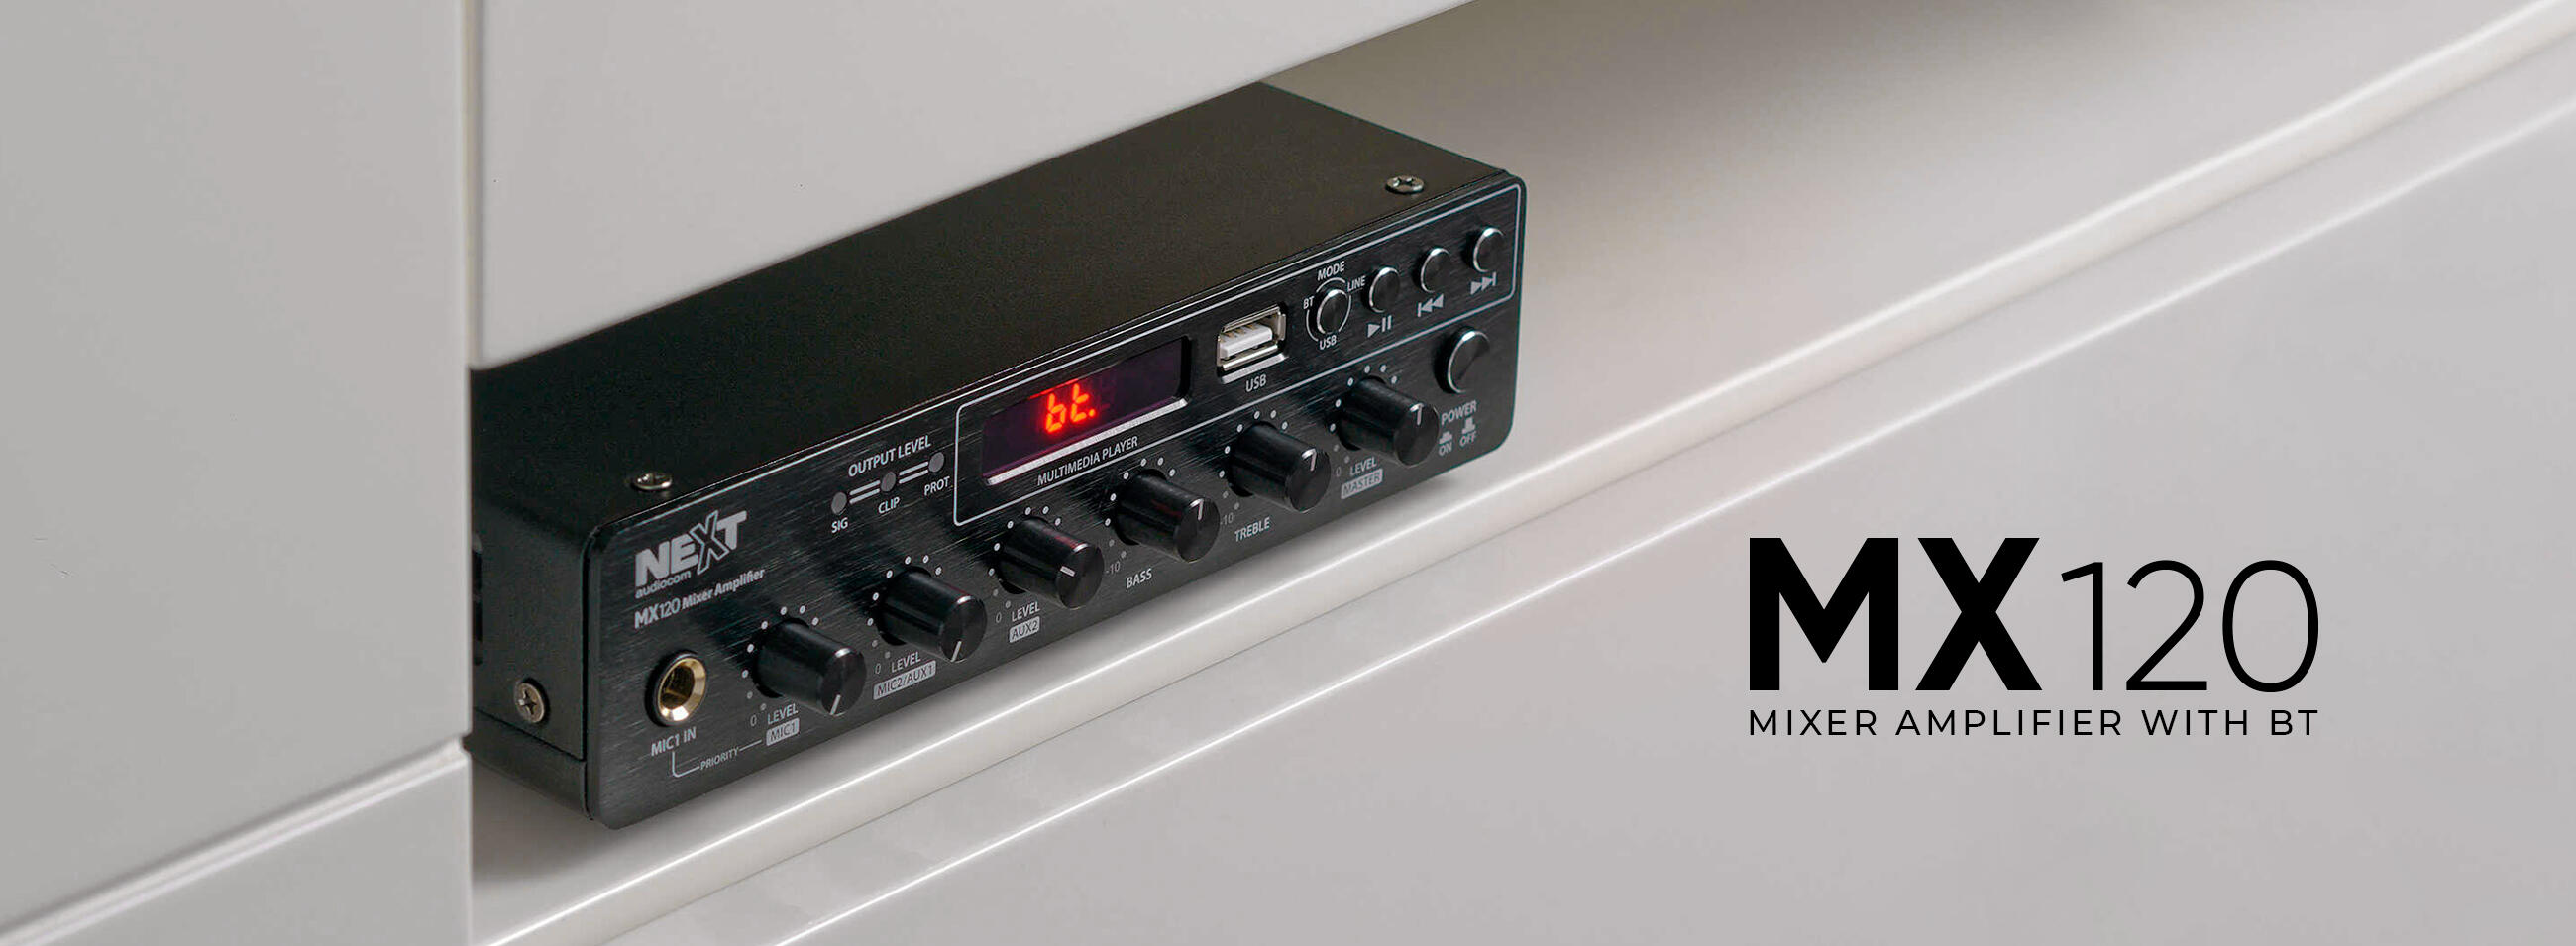 NEXT-Audiocom-MX120-banner